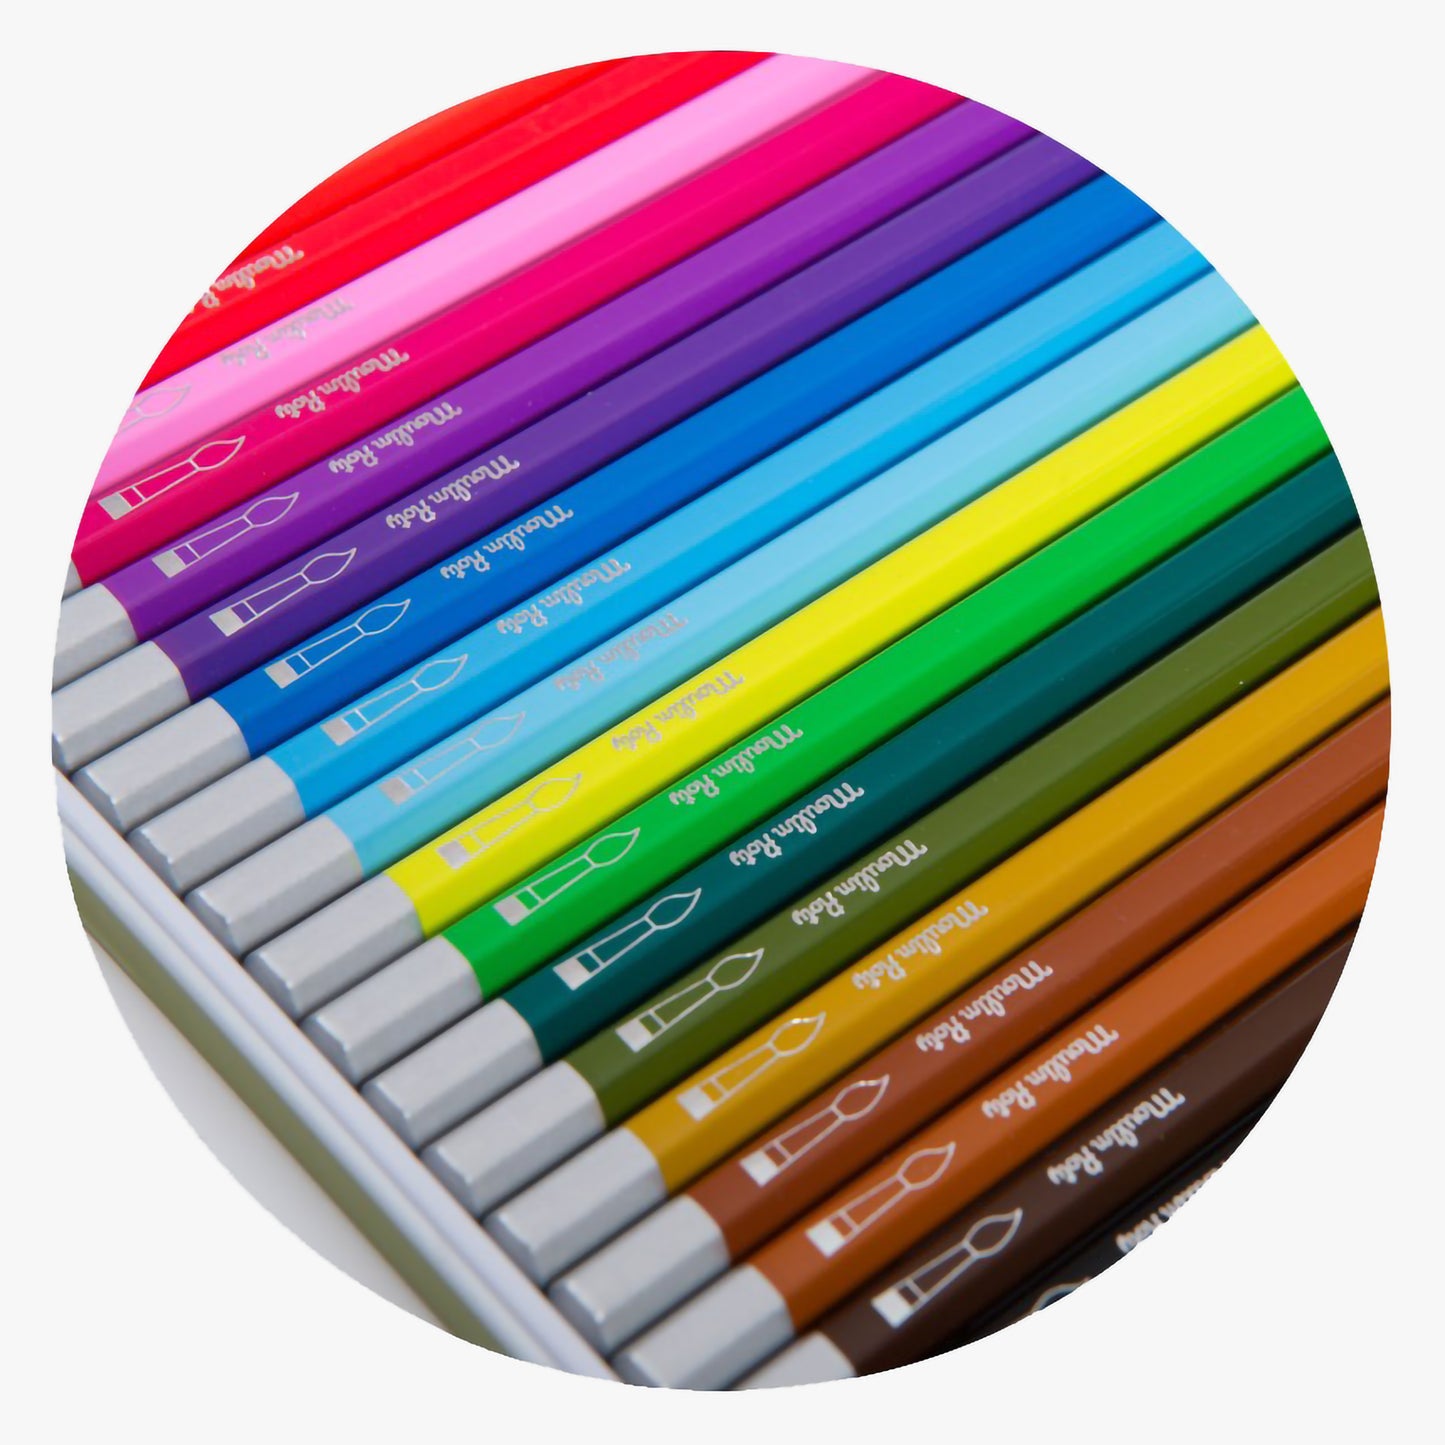 24 crayons aquarellables